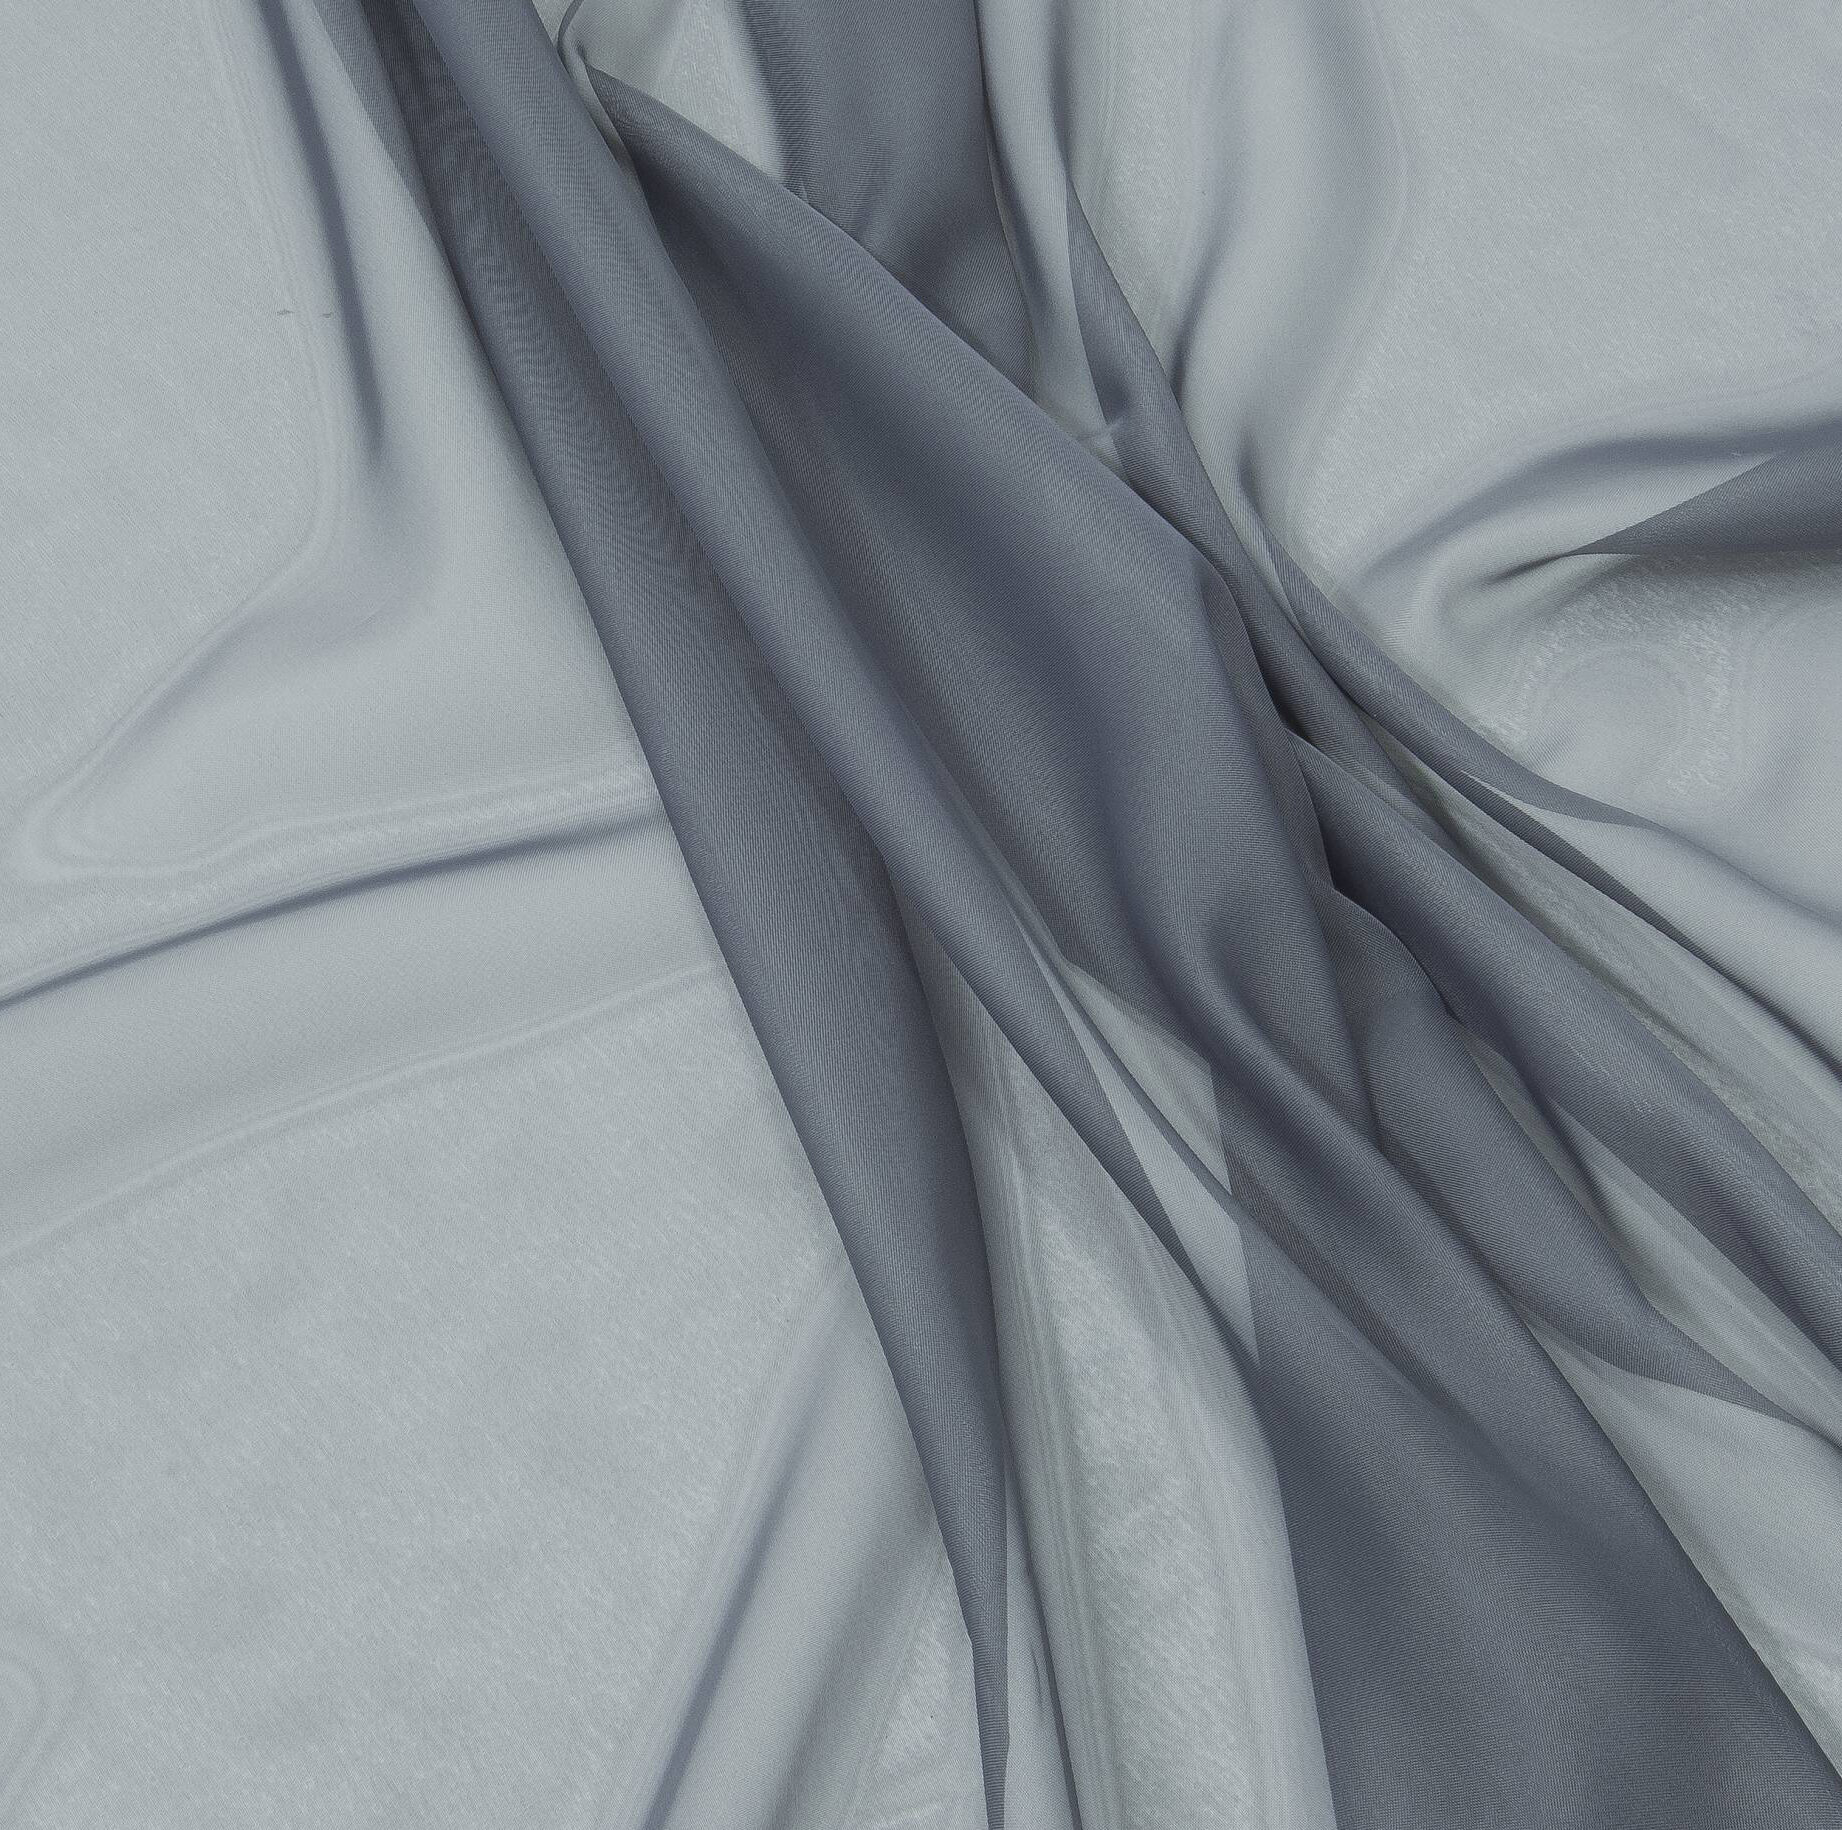 Ткань Вуаль серая для шитья штор рукоделия и творчества, ширина 300 см. Обращаем внимание, 1 штука в корзине равна 1 метру ткани в заказе! Вам приходит цельный отрез!